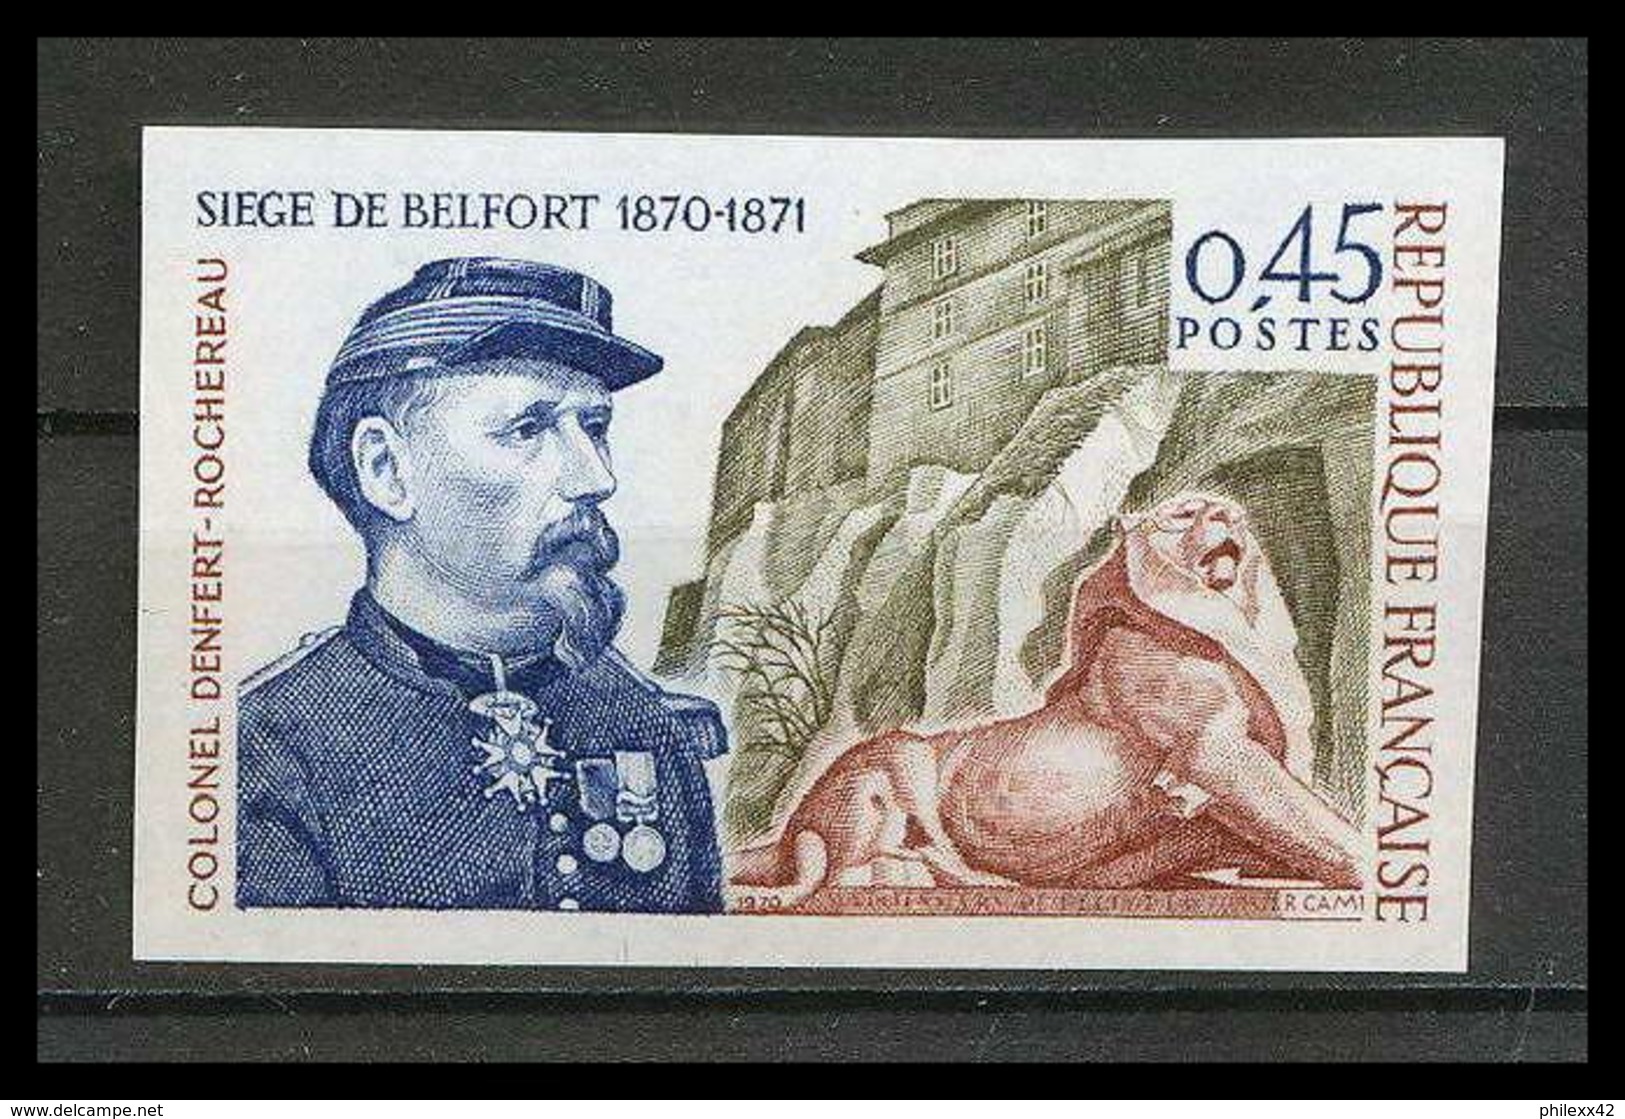 France N°1660 Belfort Lion Denfert Rochereau Cote 40 Non Dentelé ** MNH (Imperforate) - Non Classés